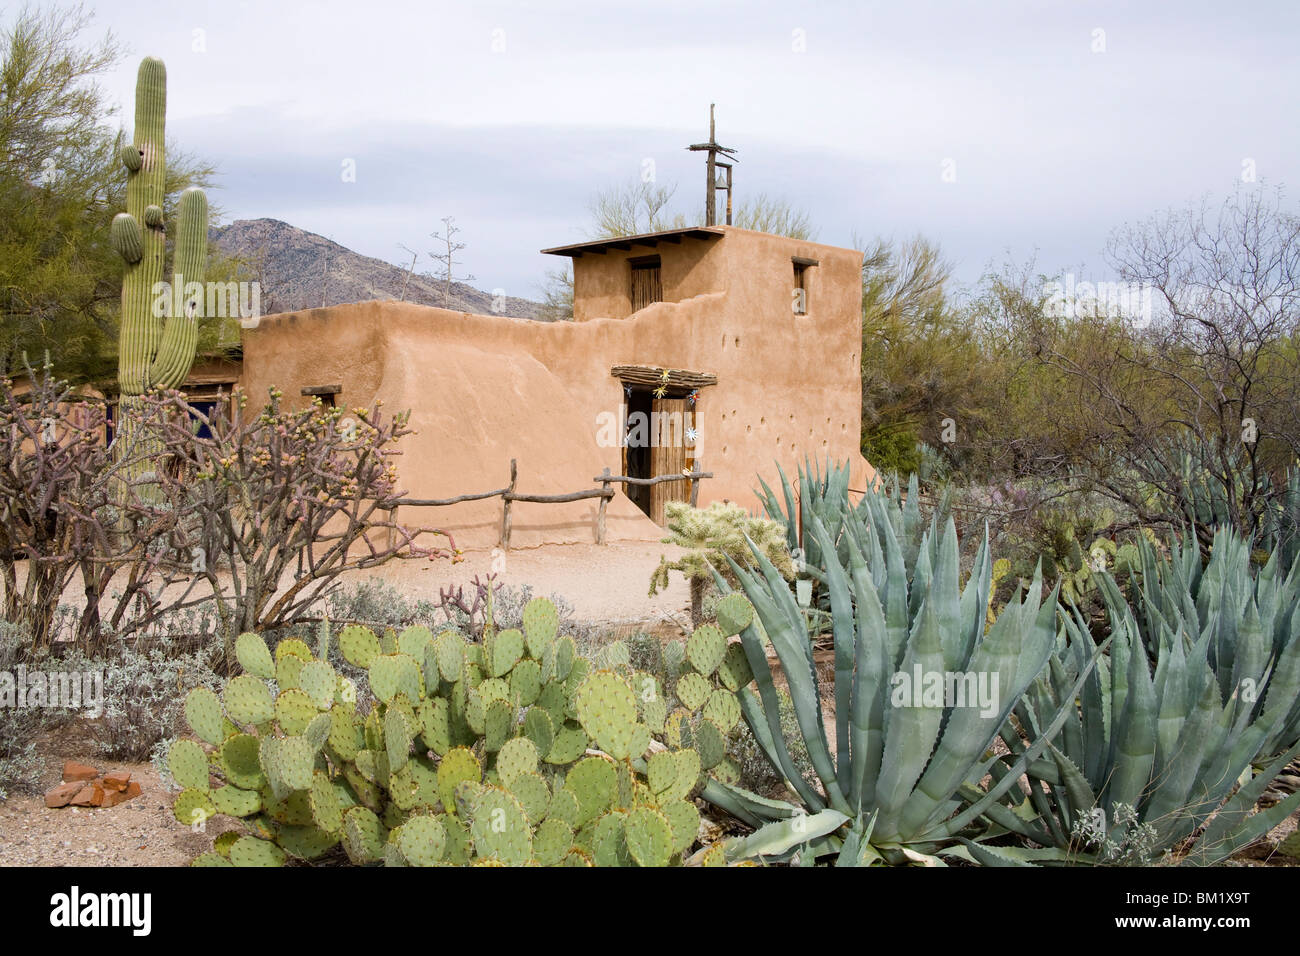 Adobe-Mission De Grazia Galerie in der Sonne, Tucson, Arizona, Vereinigte Staaten von Amerika, Nordamerika Stockfoto